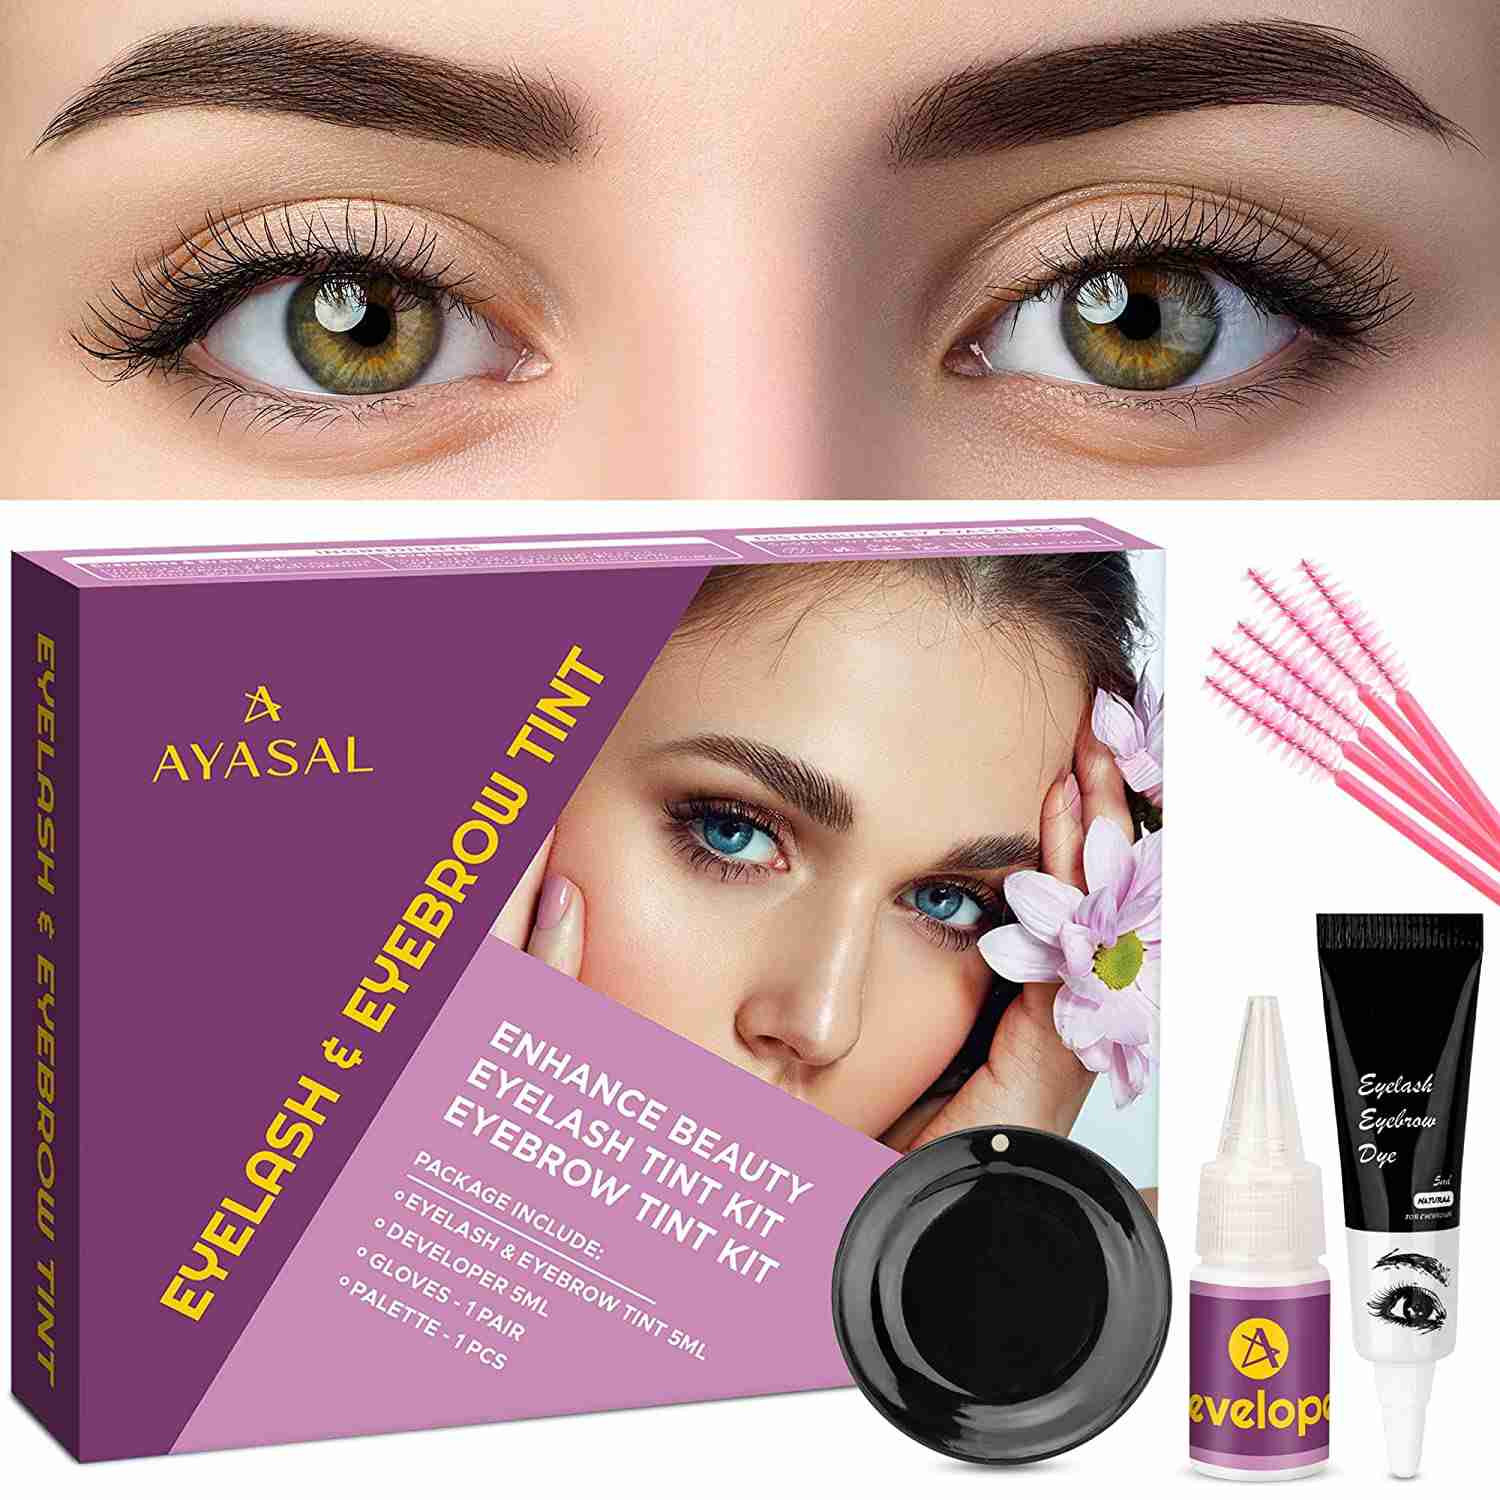 ayasal-eyelash-and-eyebrow-coloring-kit for cheap